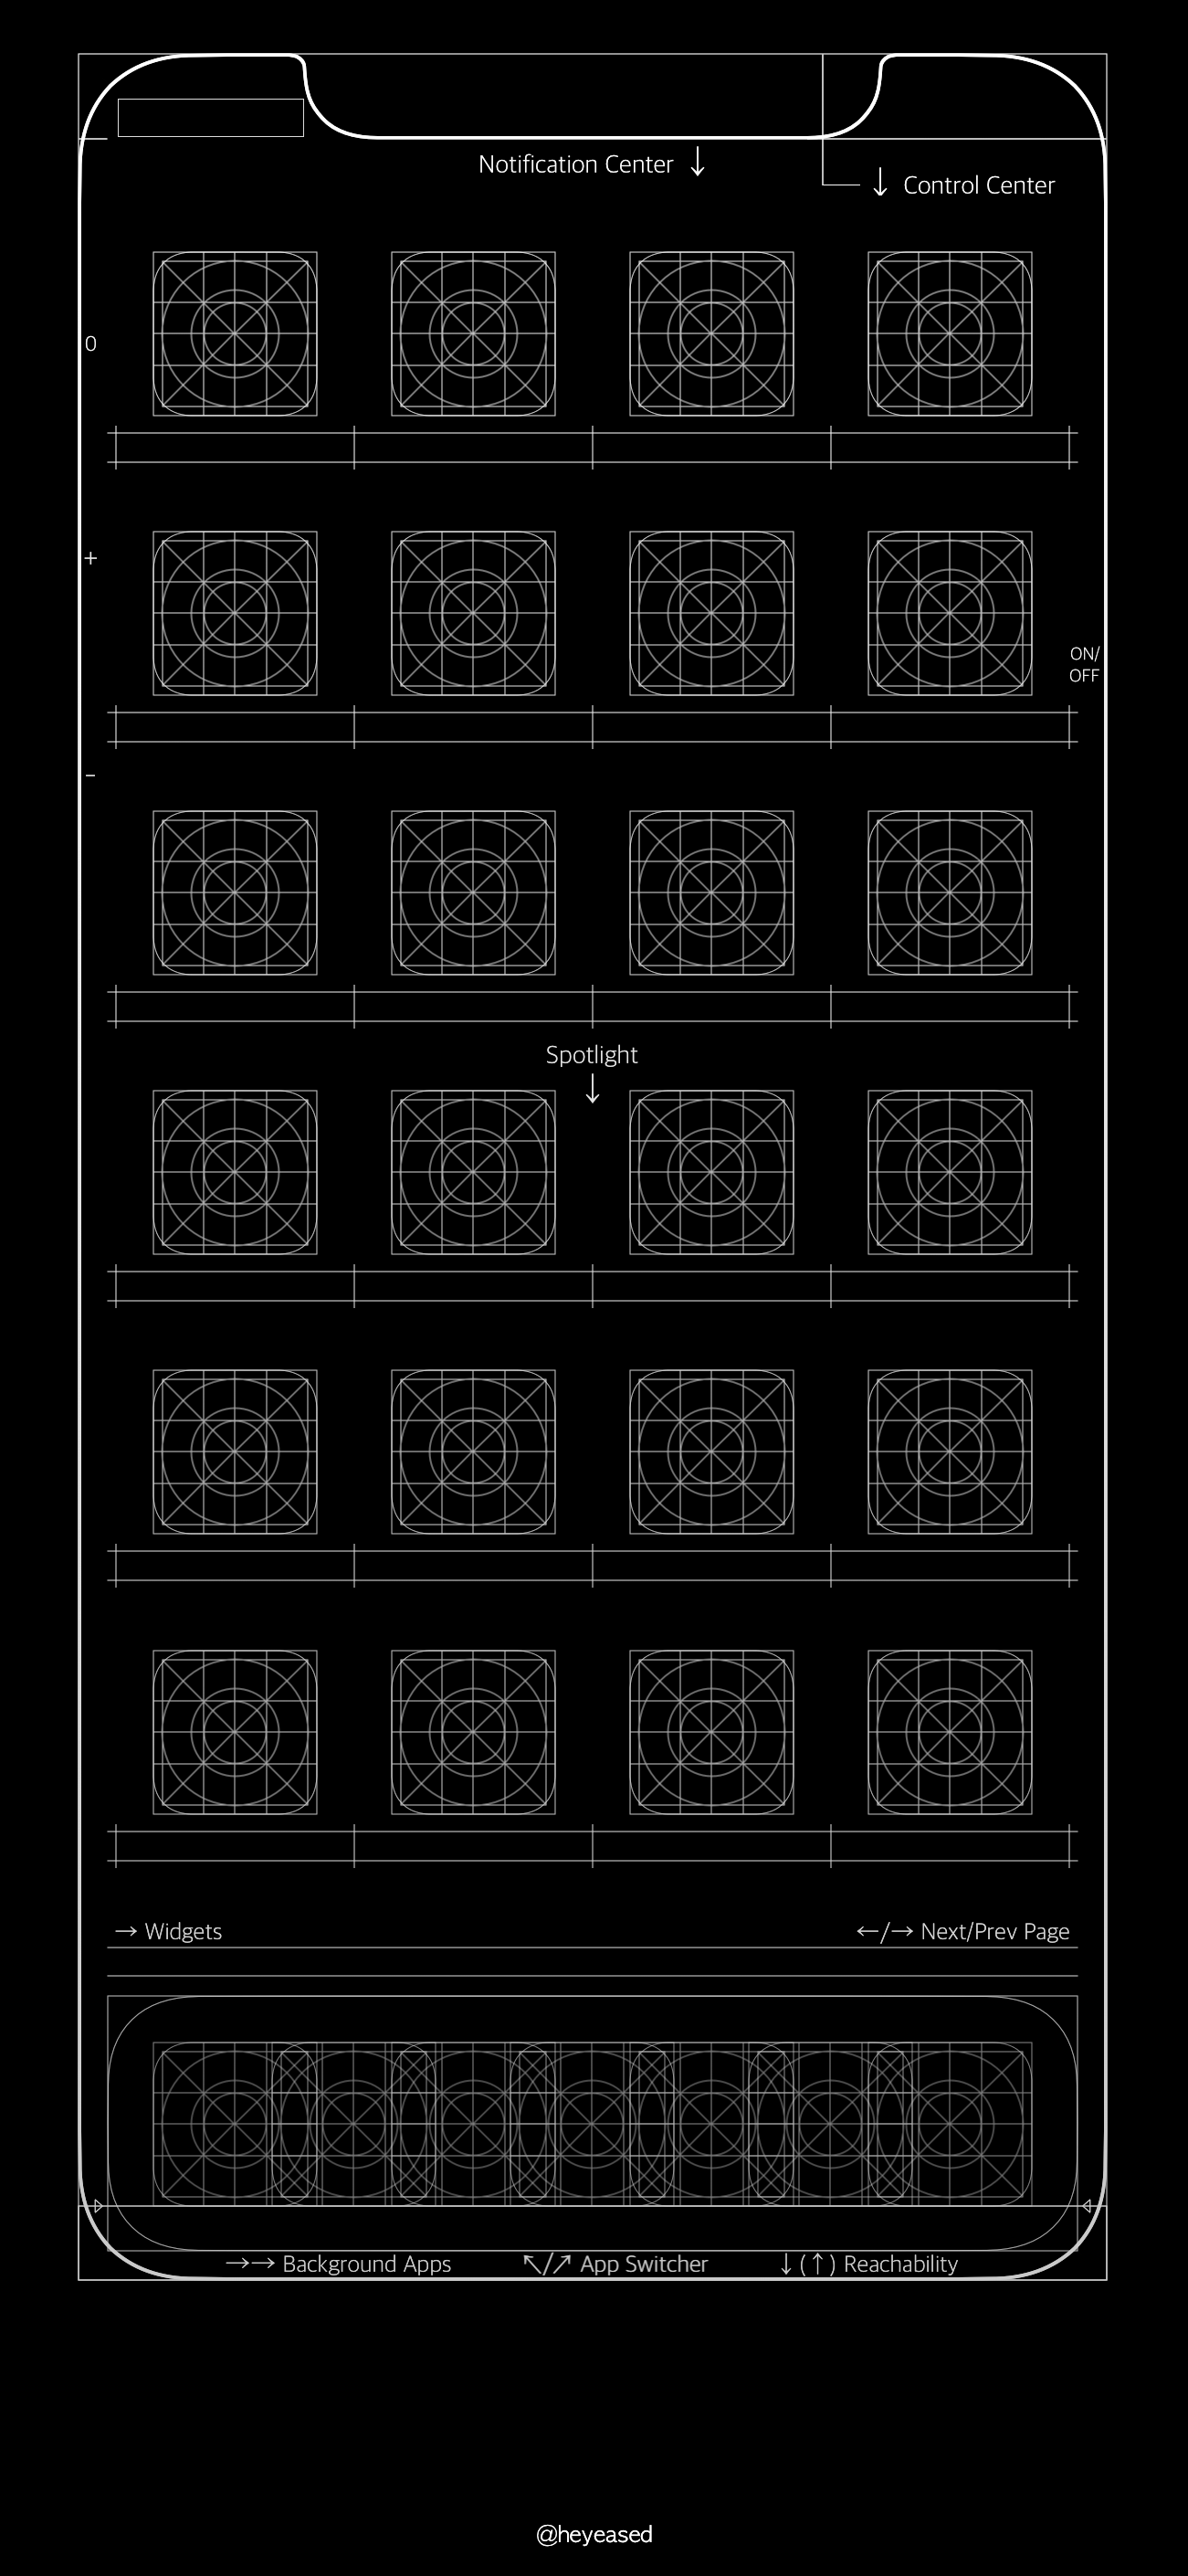 Wallpapers đẹp cho iDevice: Ảnh nền bản vẽ thiết kế iOS 11